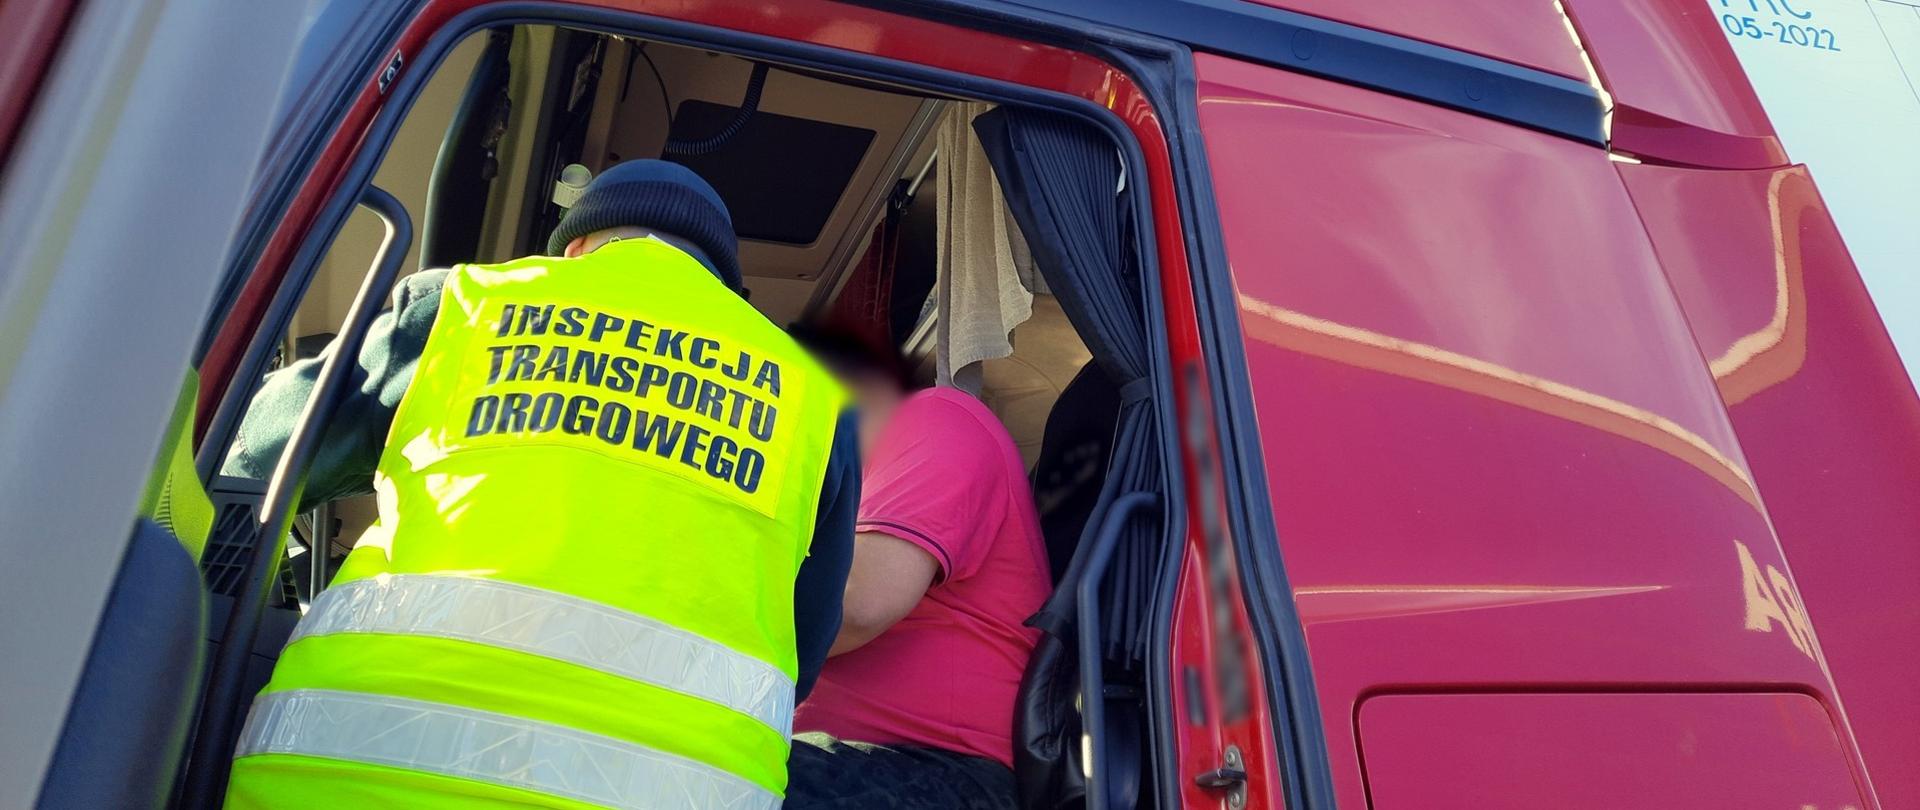 Inspektor wielkopolskiej ITD stoi w wejściu do kabiny ciężarówki i pobiera wymagane dokumenty od kierowcy.